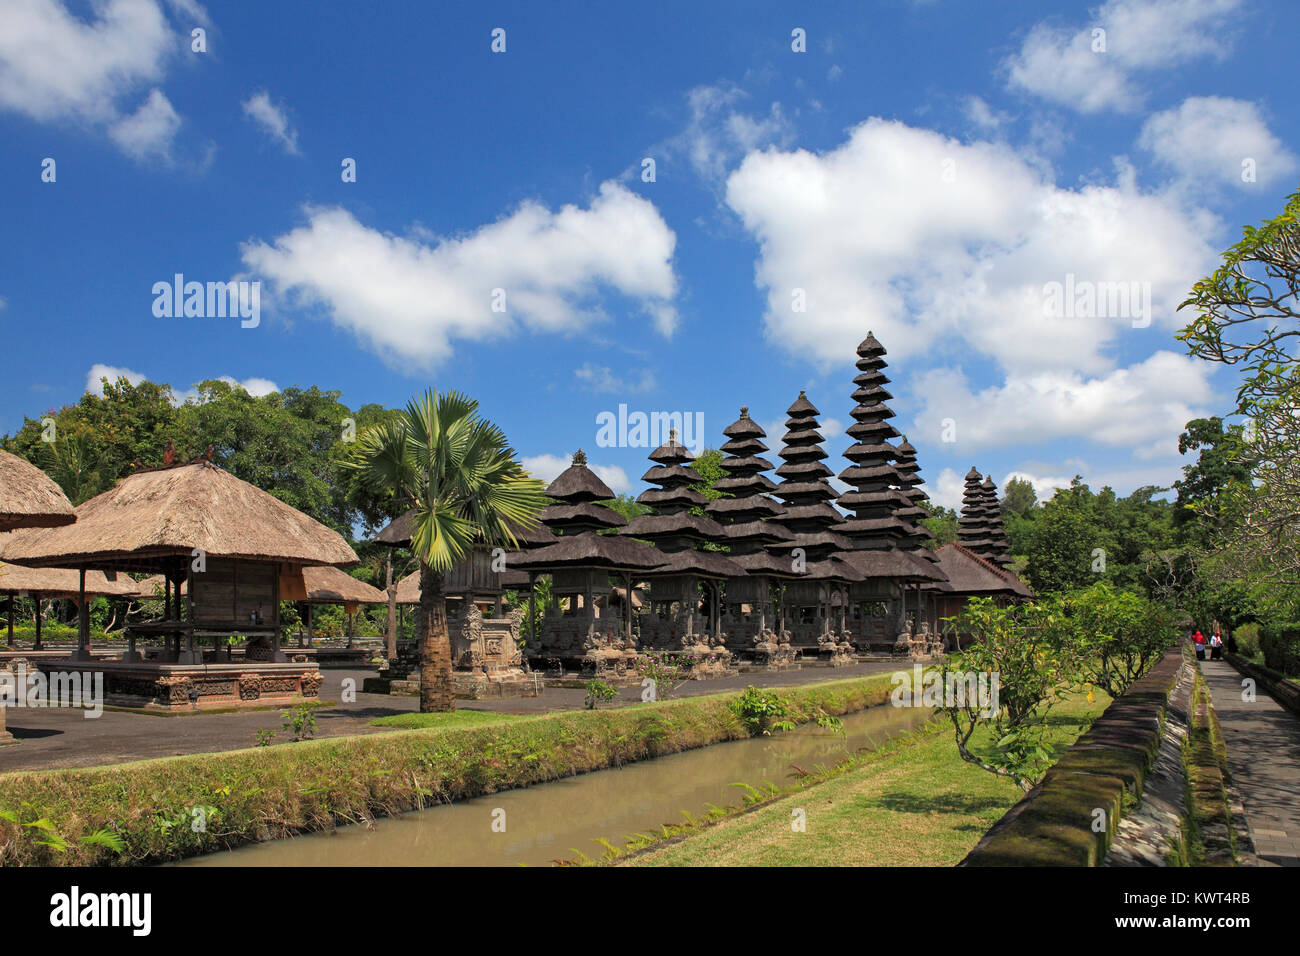 Heiligtümer in den Heiligen Tempel, Utama Mandala, im Pura Taman Ayun, der königliche Tempel von Mengwi, Badung, Bali, Indonesien. Stockfoto